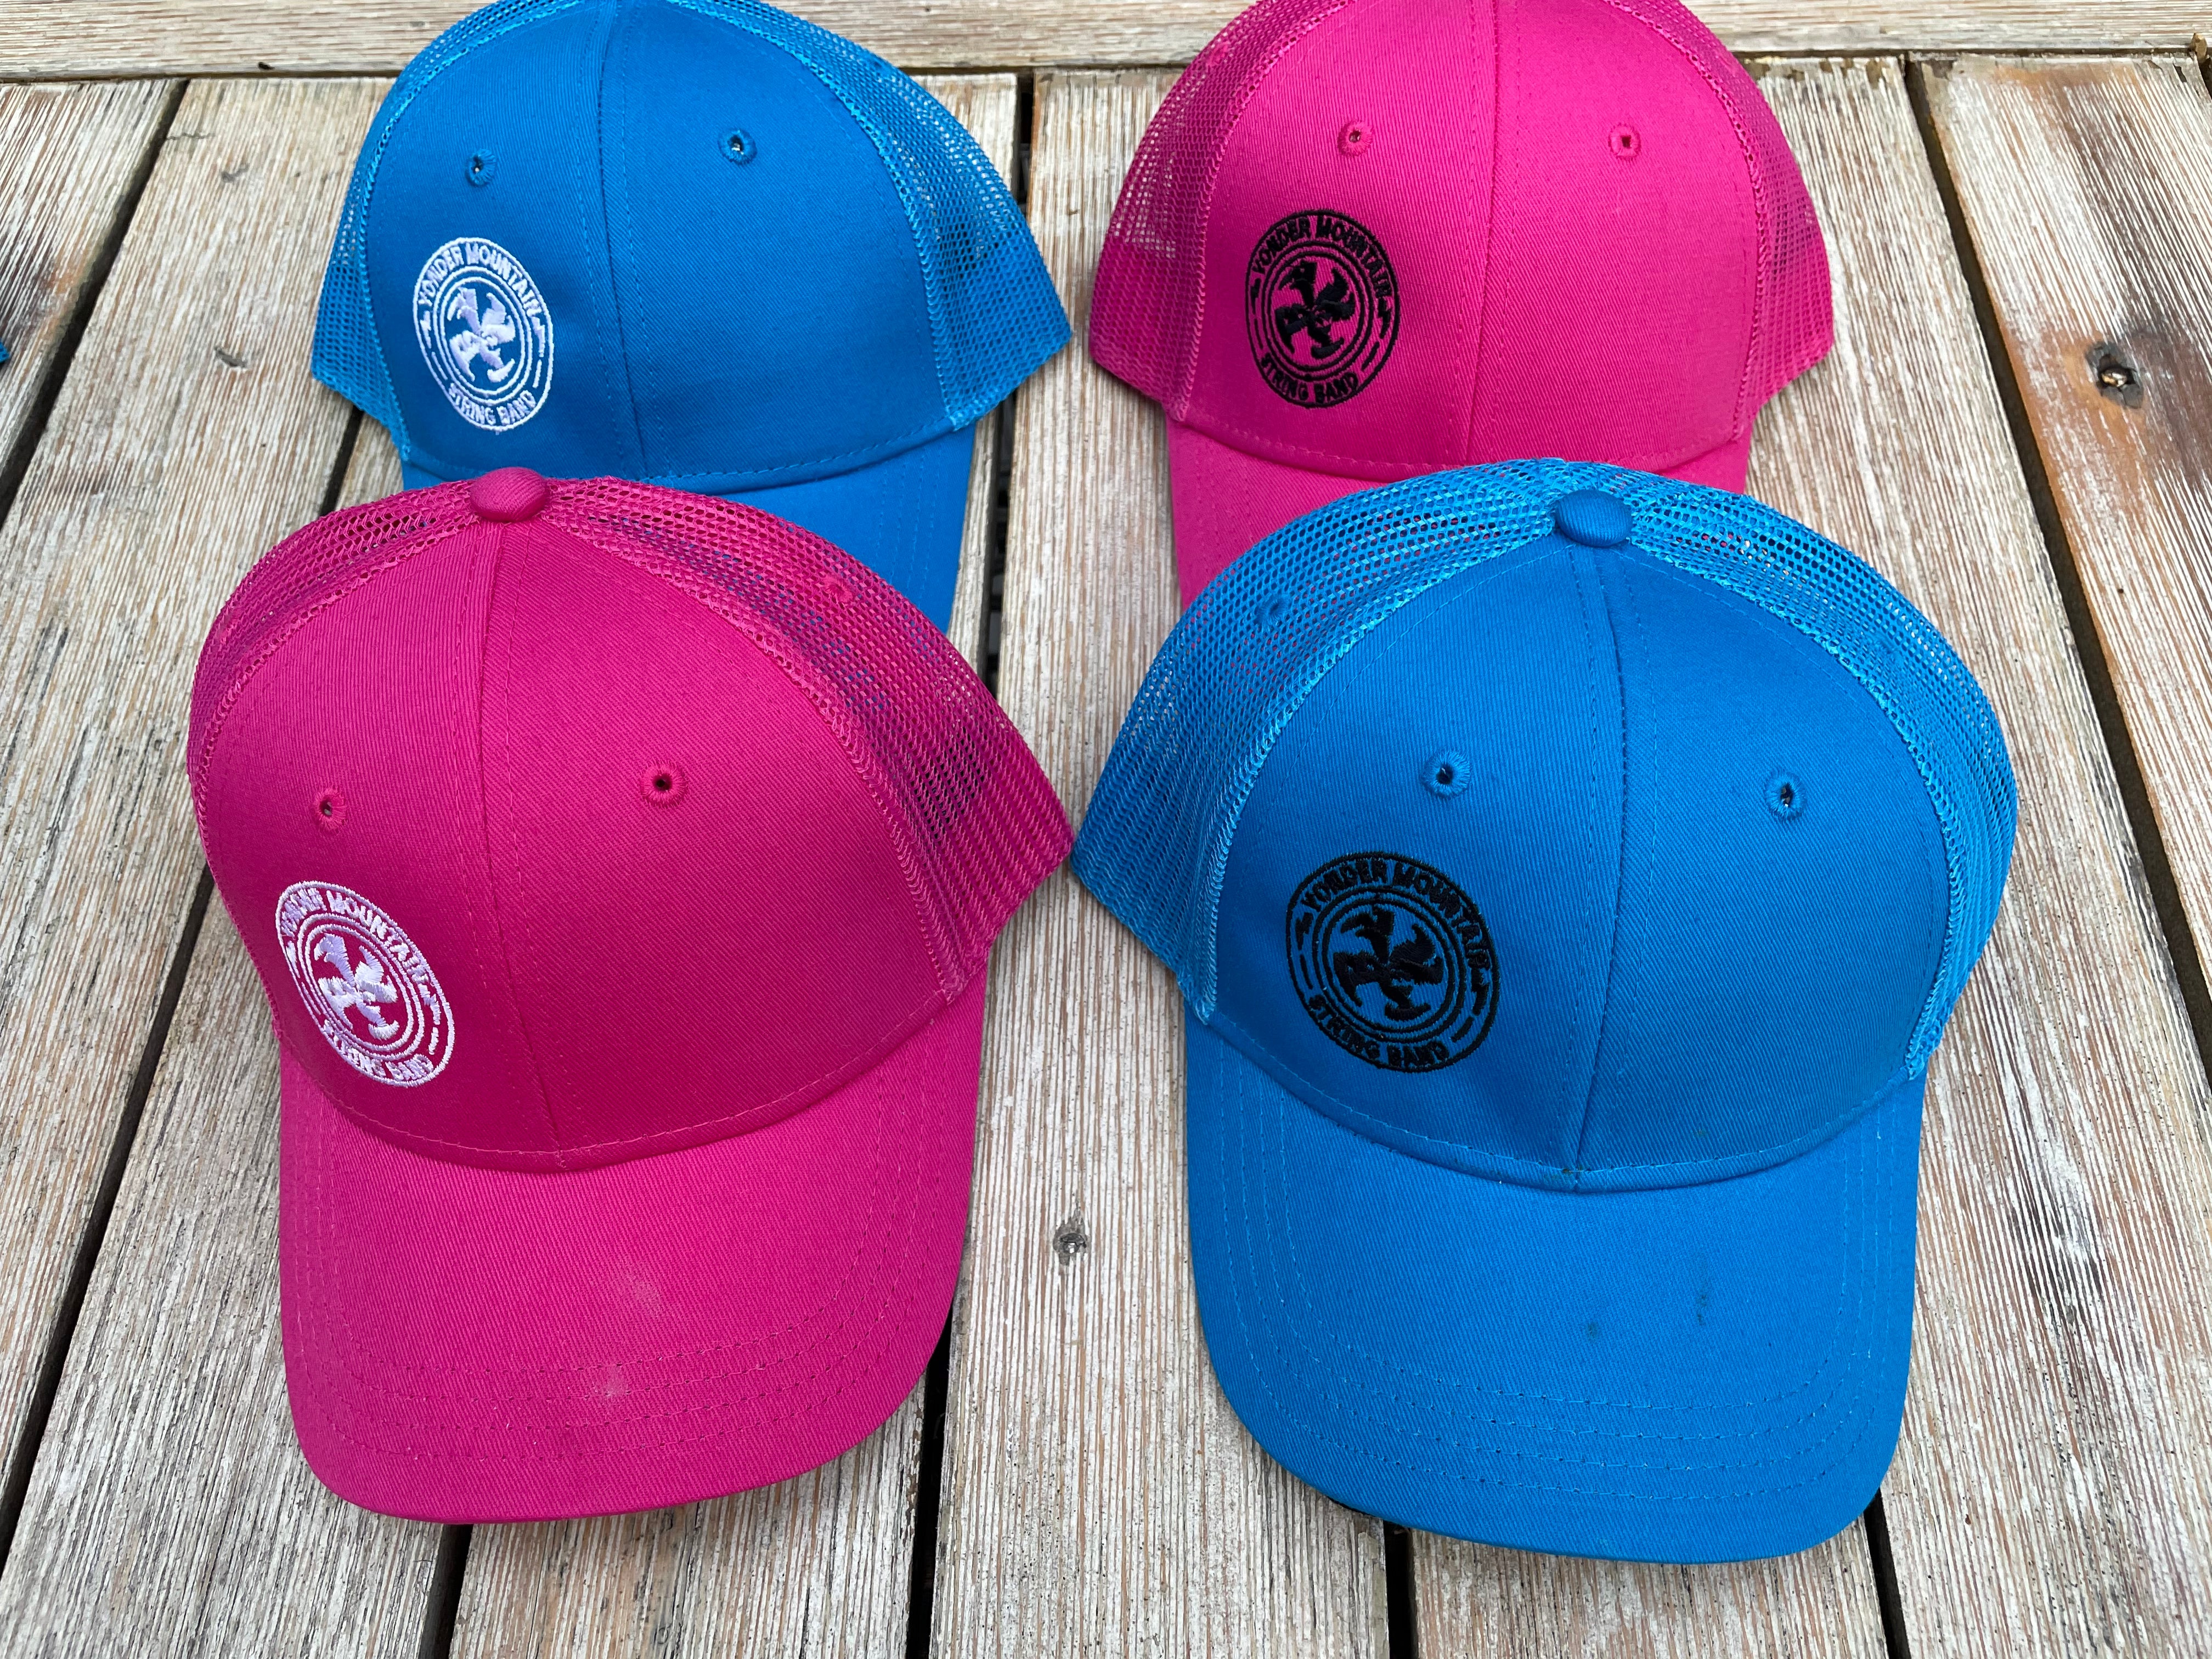 Kids Trucker Hats